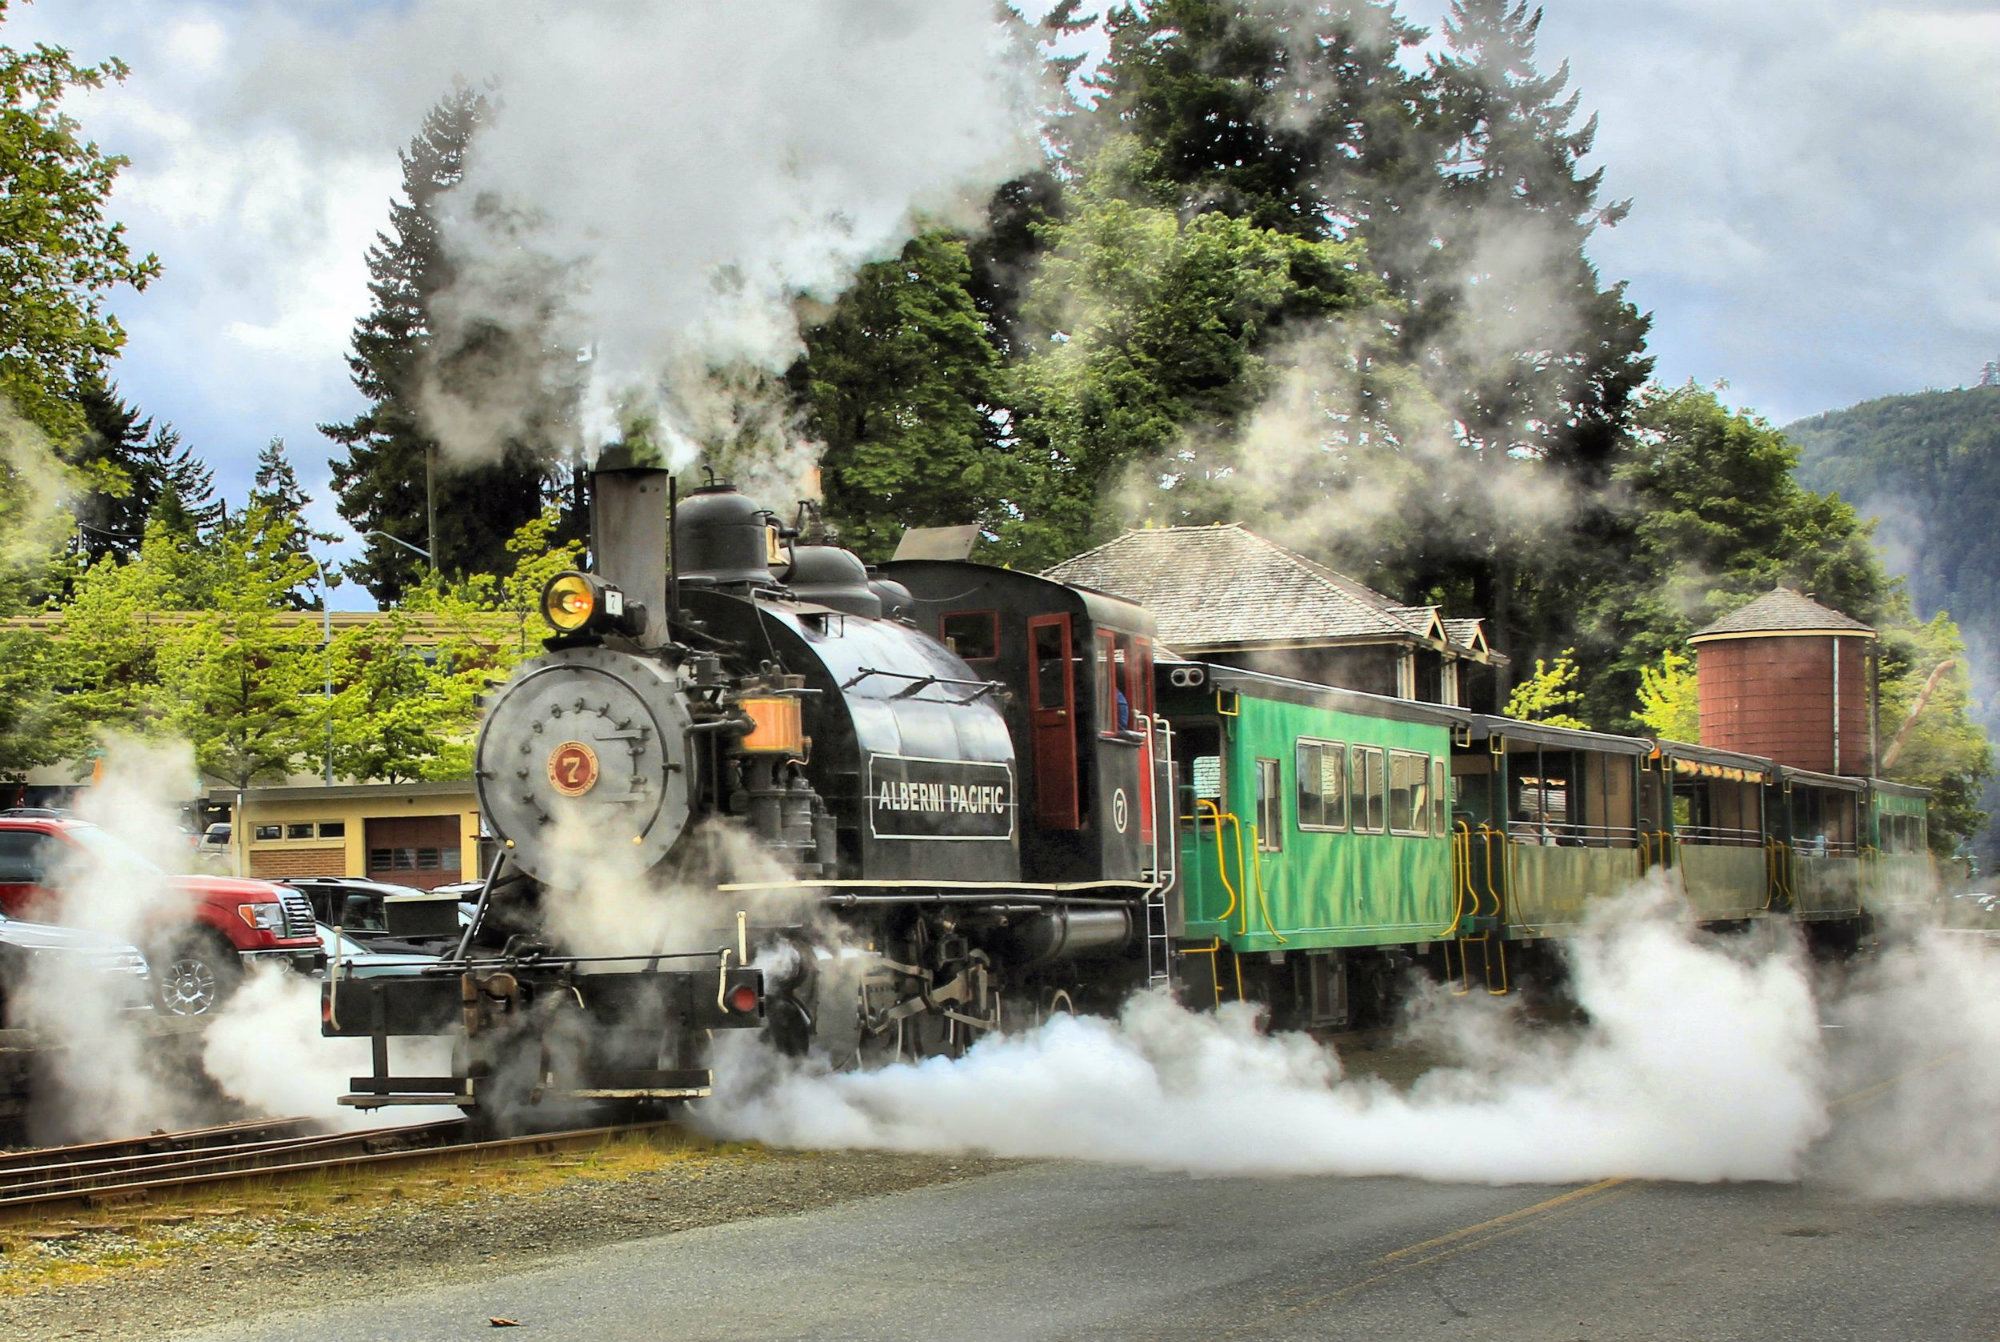 Port Alberni Steam Train, Port Alberni, Port Alberni Saw Mill, Vancouver Island activities, Vancouver Island travel guide